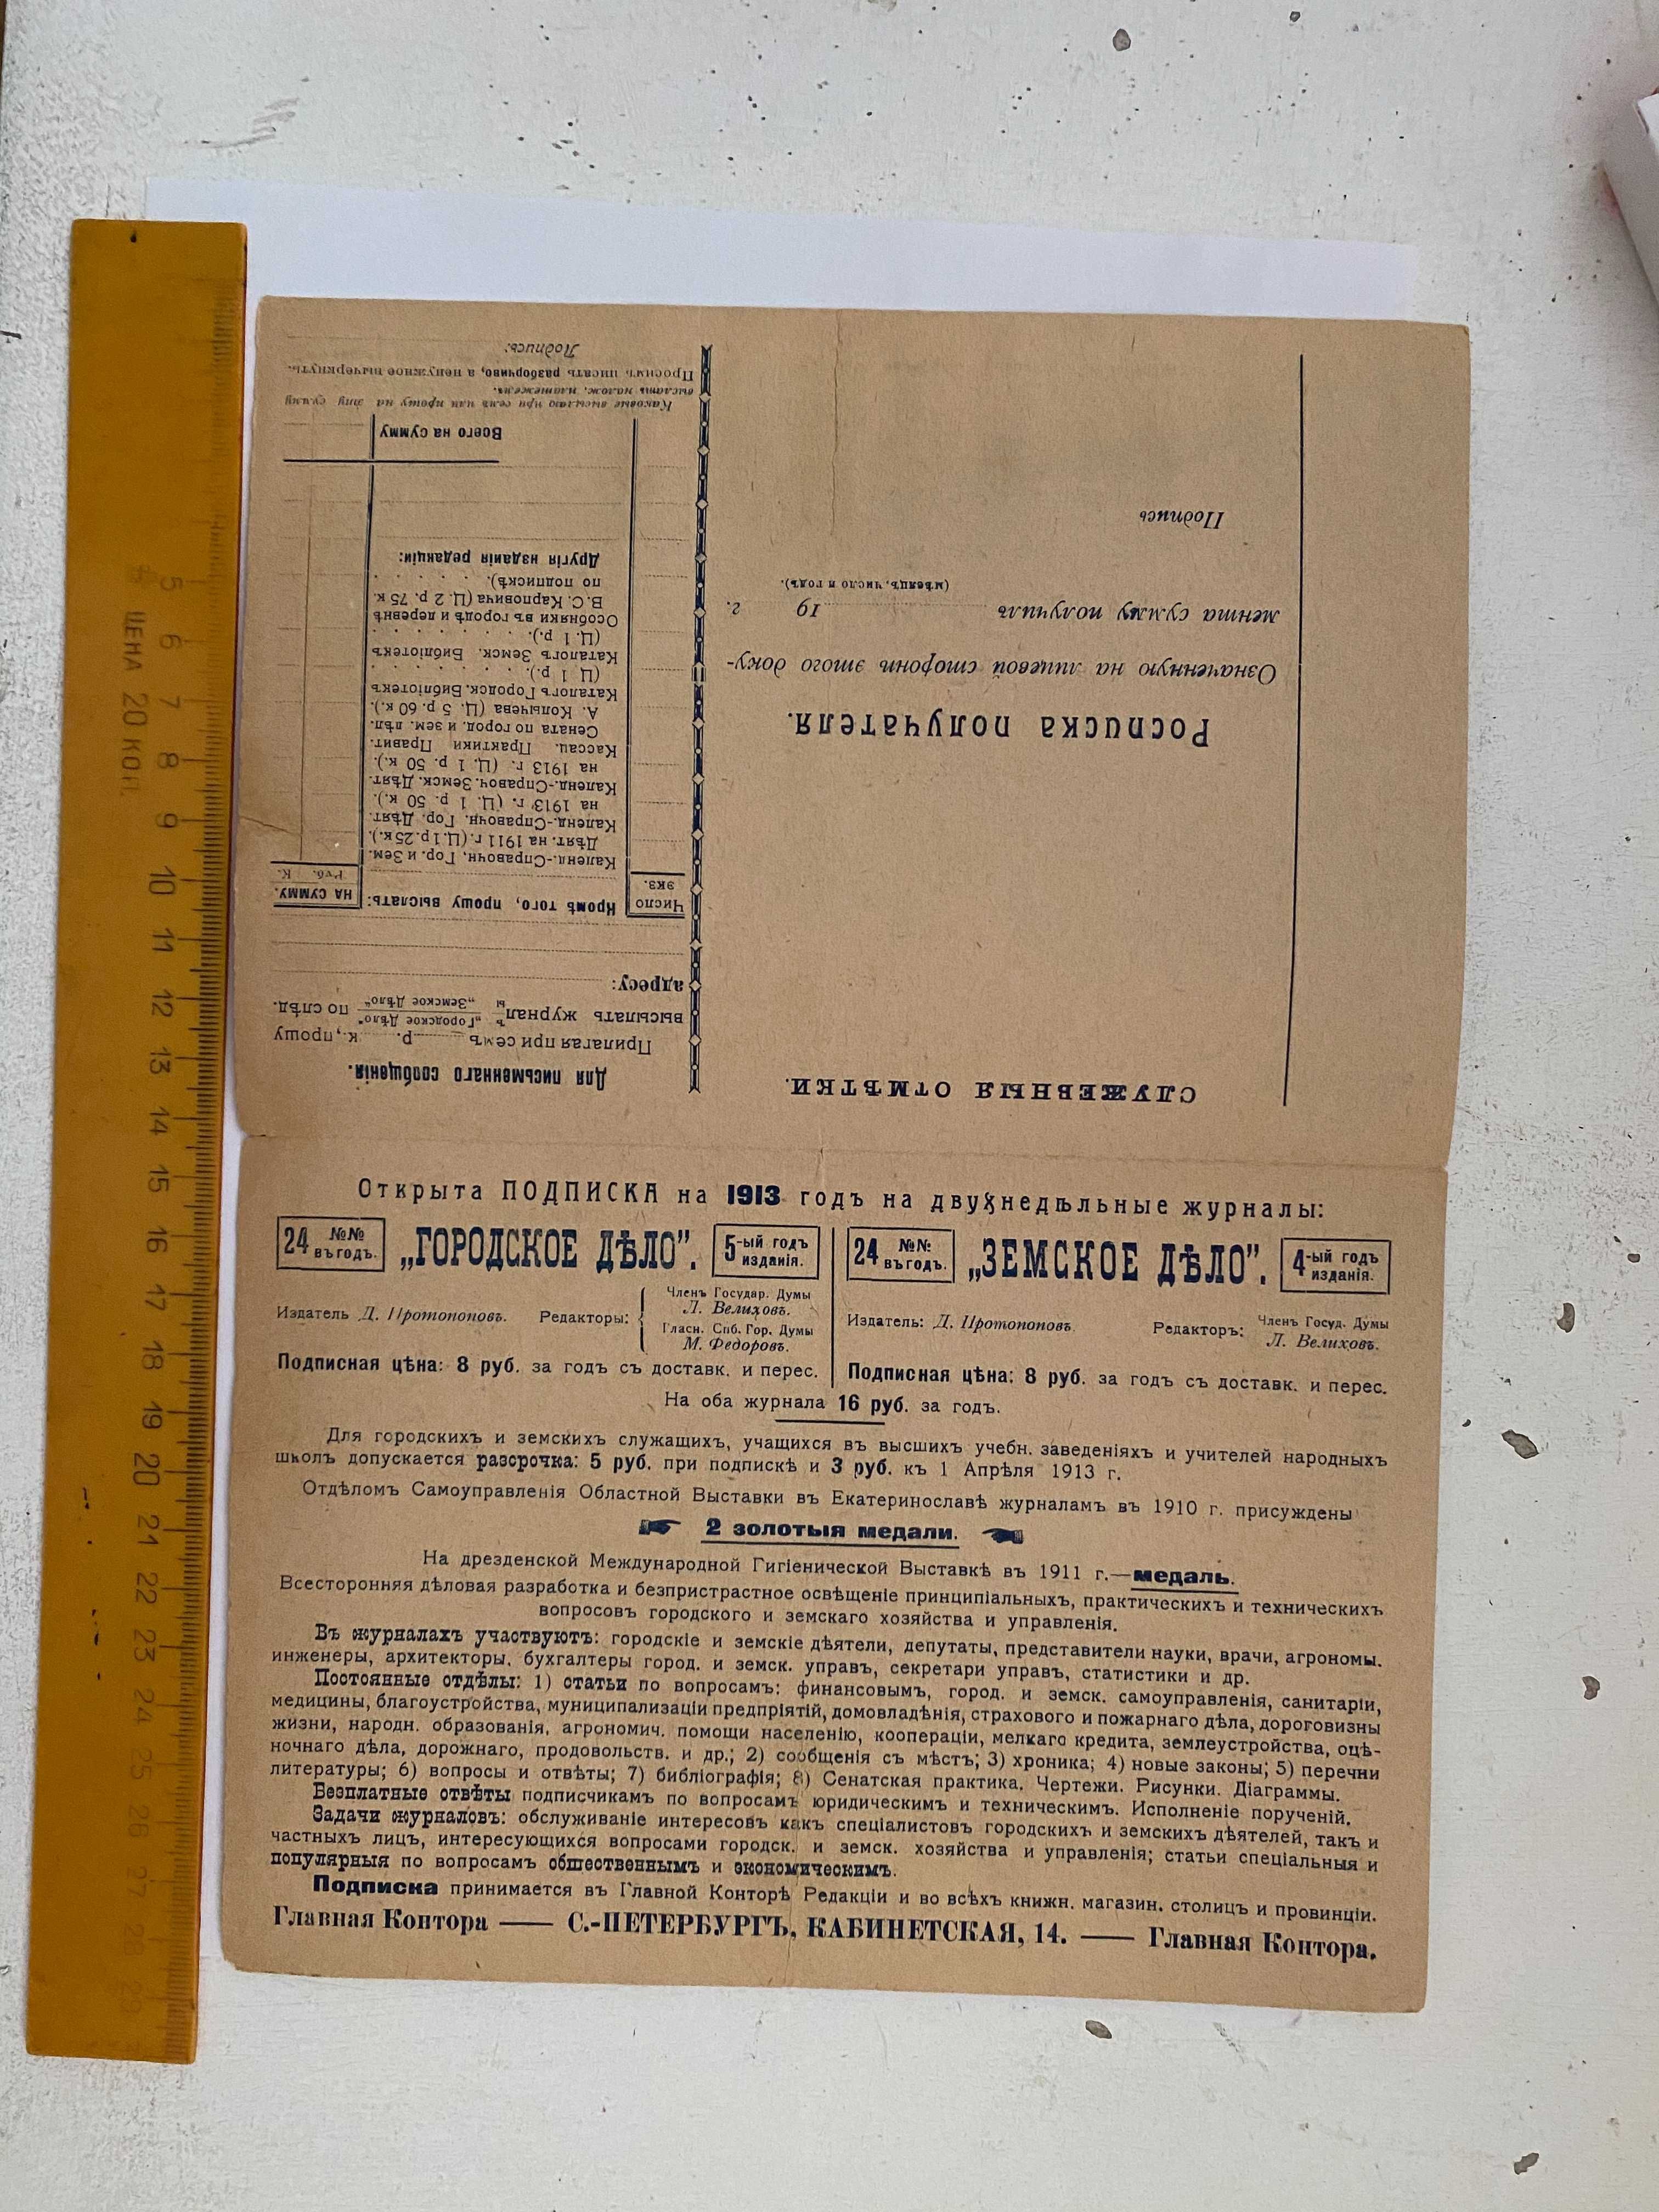 Рекламный буклет 1913 года